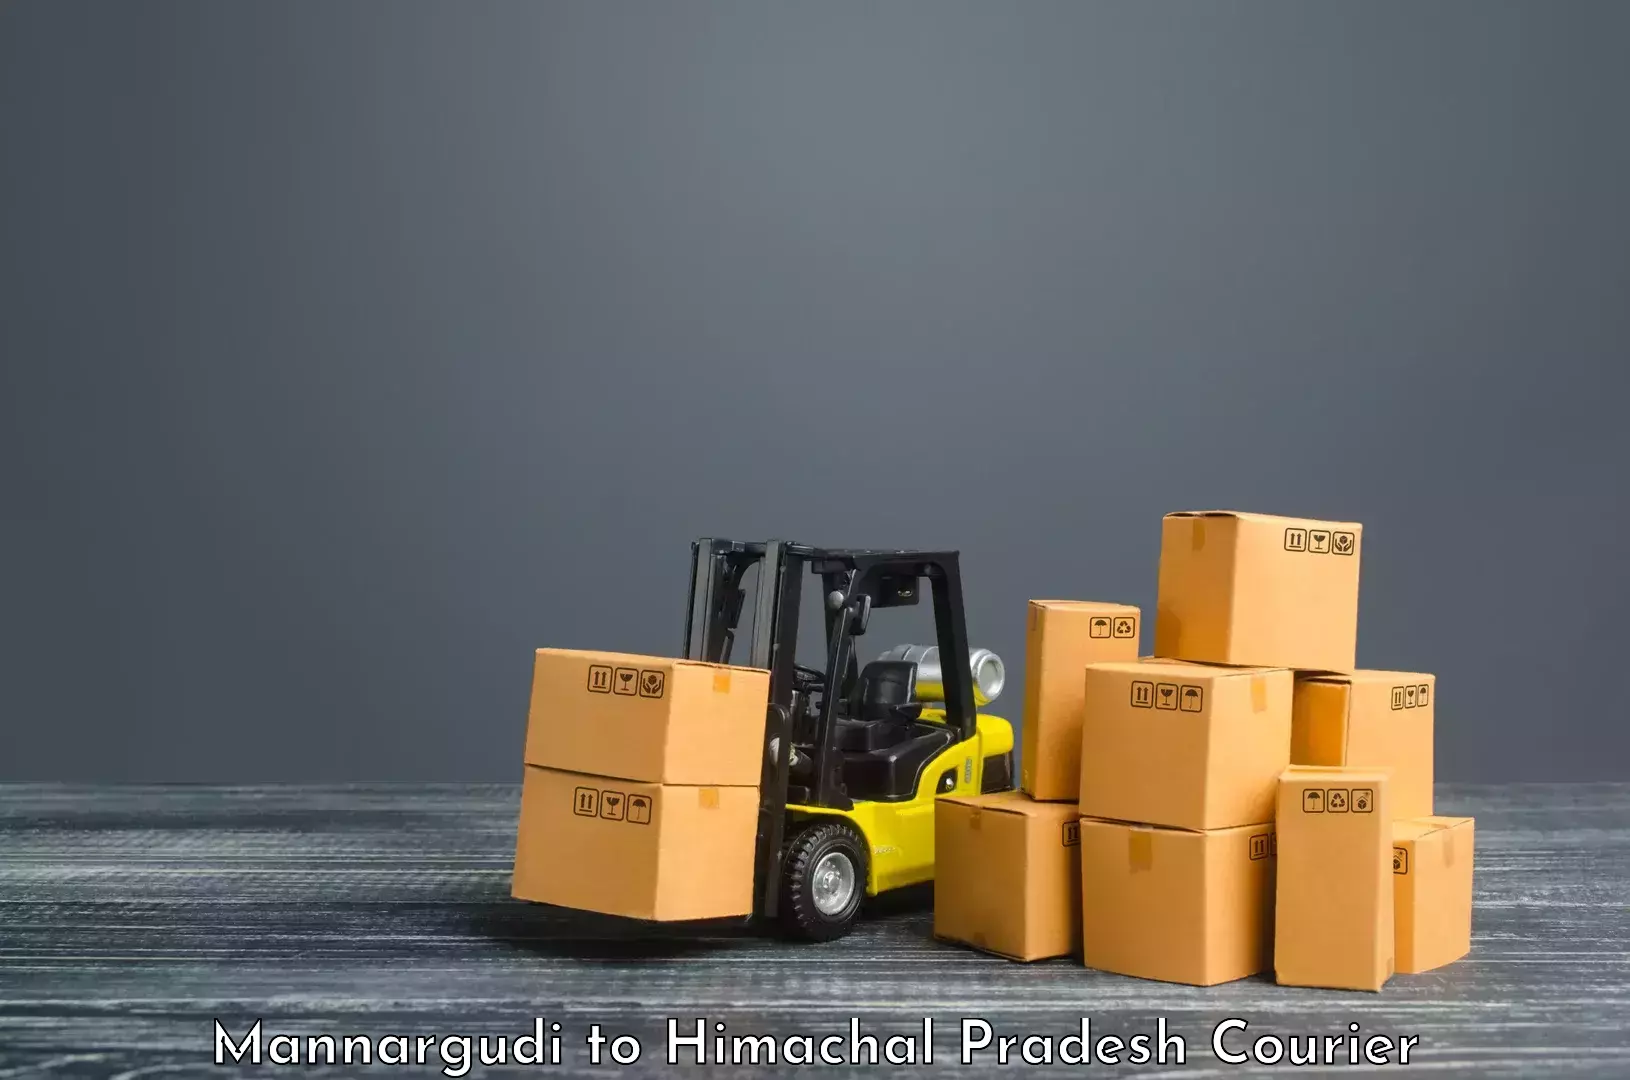 Global parcel delivery Mannargudi to Himachal Pradesh